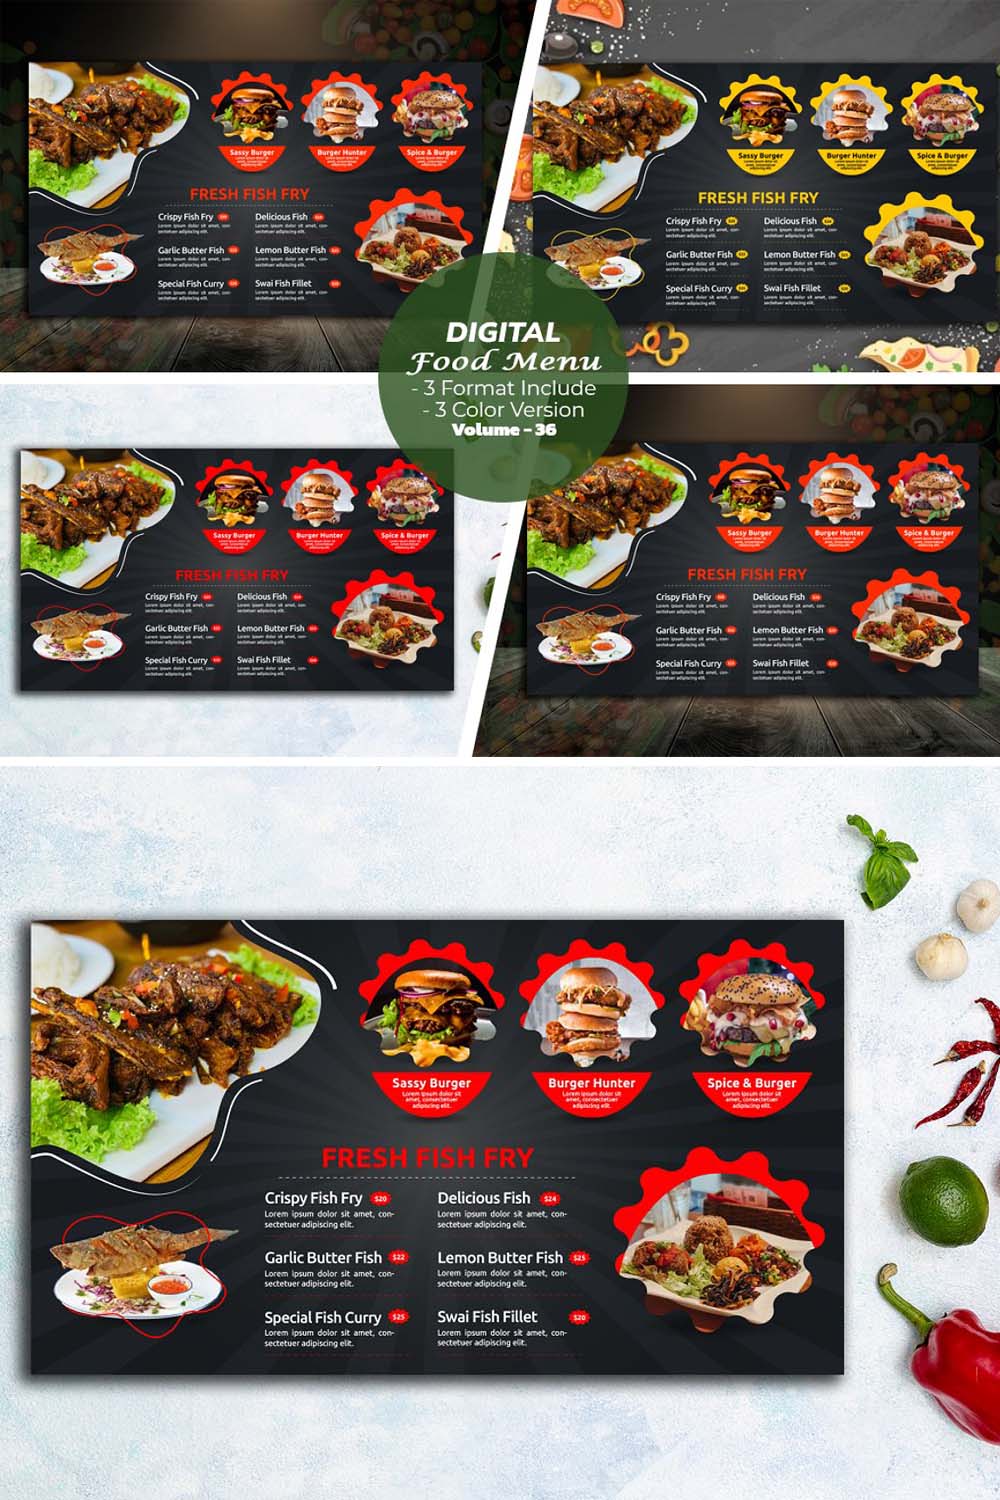 Digital Food Menu Design V-36 pinterest preview image.